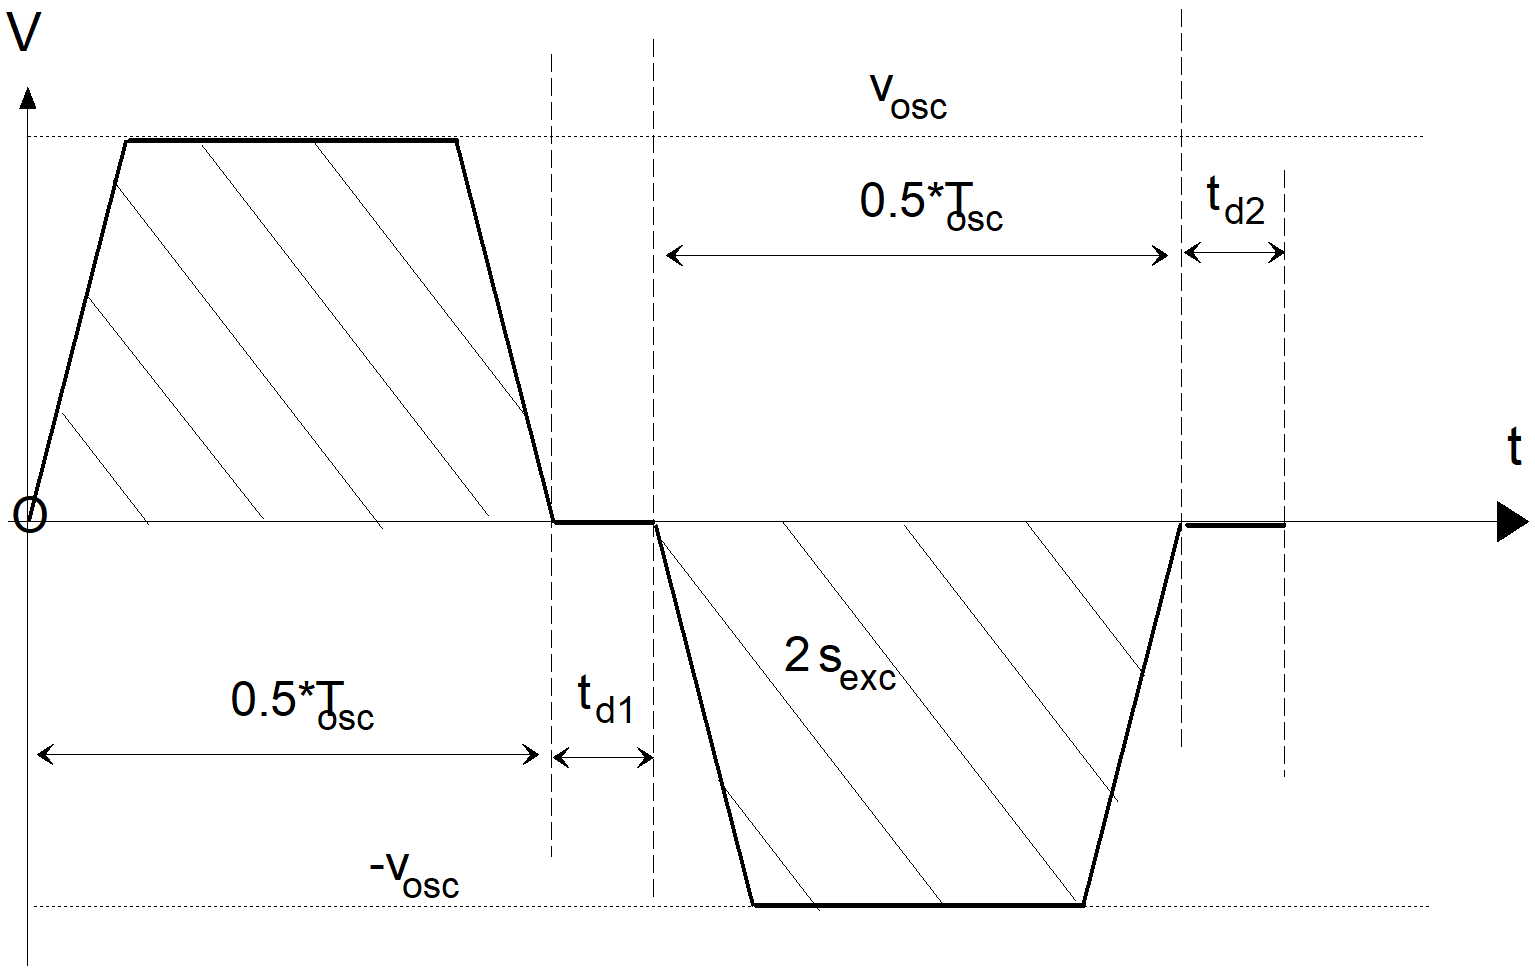 Pendelbewegung im Zeitbereich mit linearem Slope-Profil